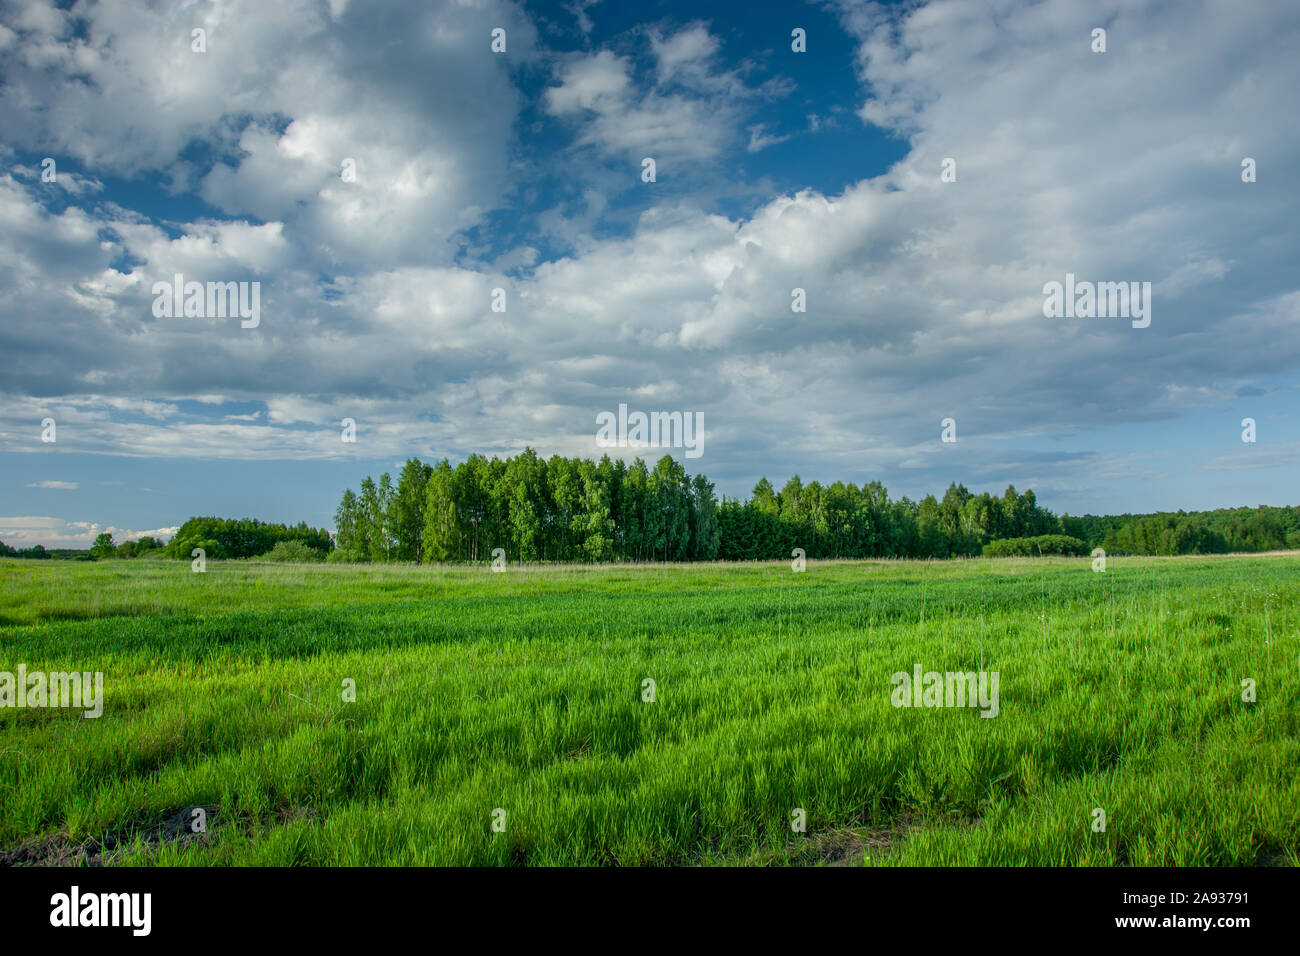 Frühjahr grünes Feld, Wald am Horizont und Wolken am Himmel - Zarzecze, Lubelskie, Polen Stockfoto